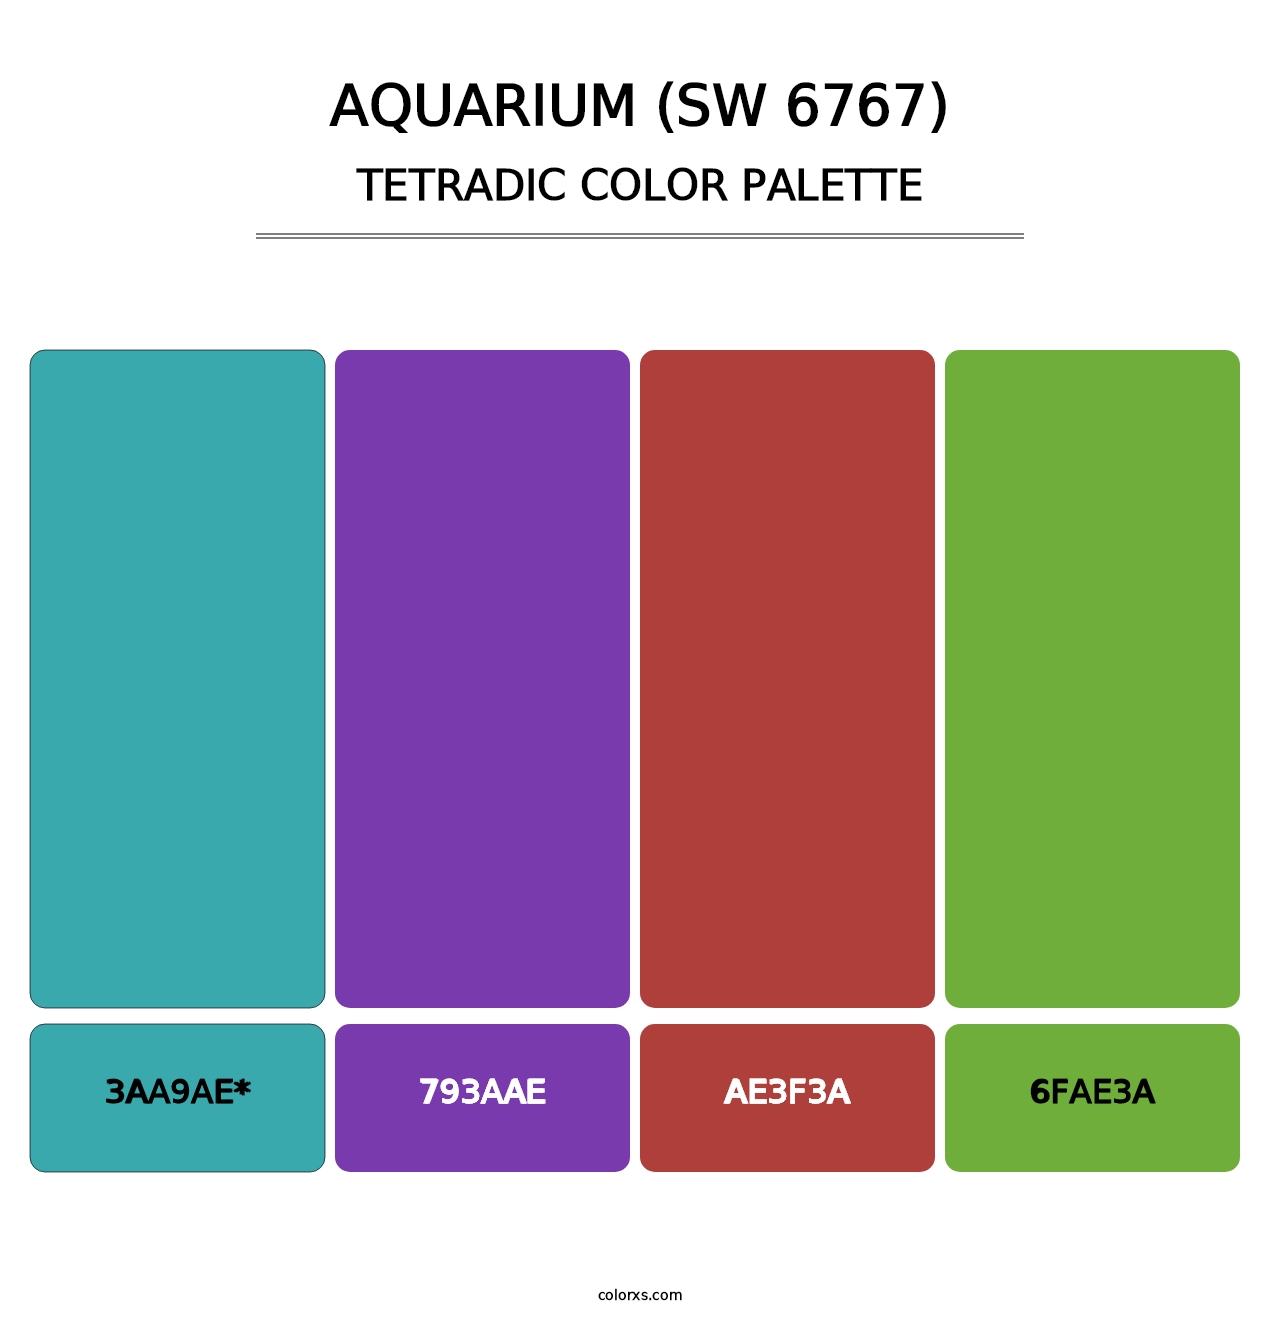 Aquarium (SW 6767) - Tetradic Color Palette